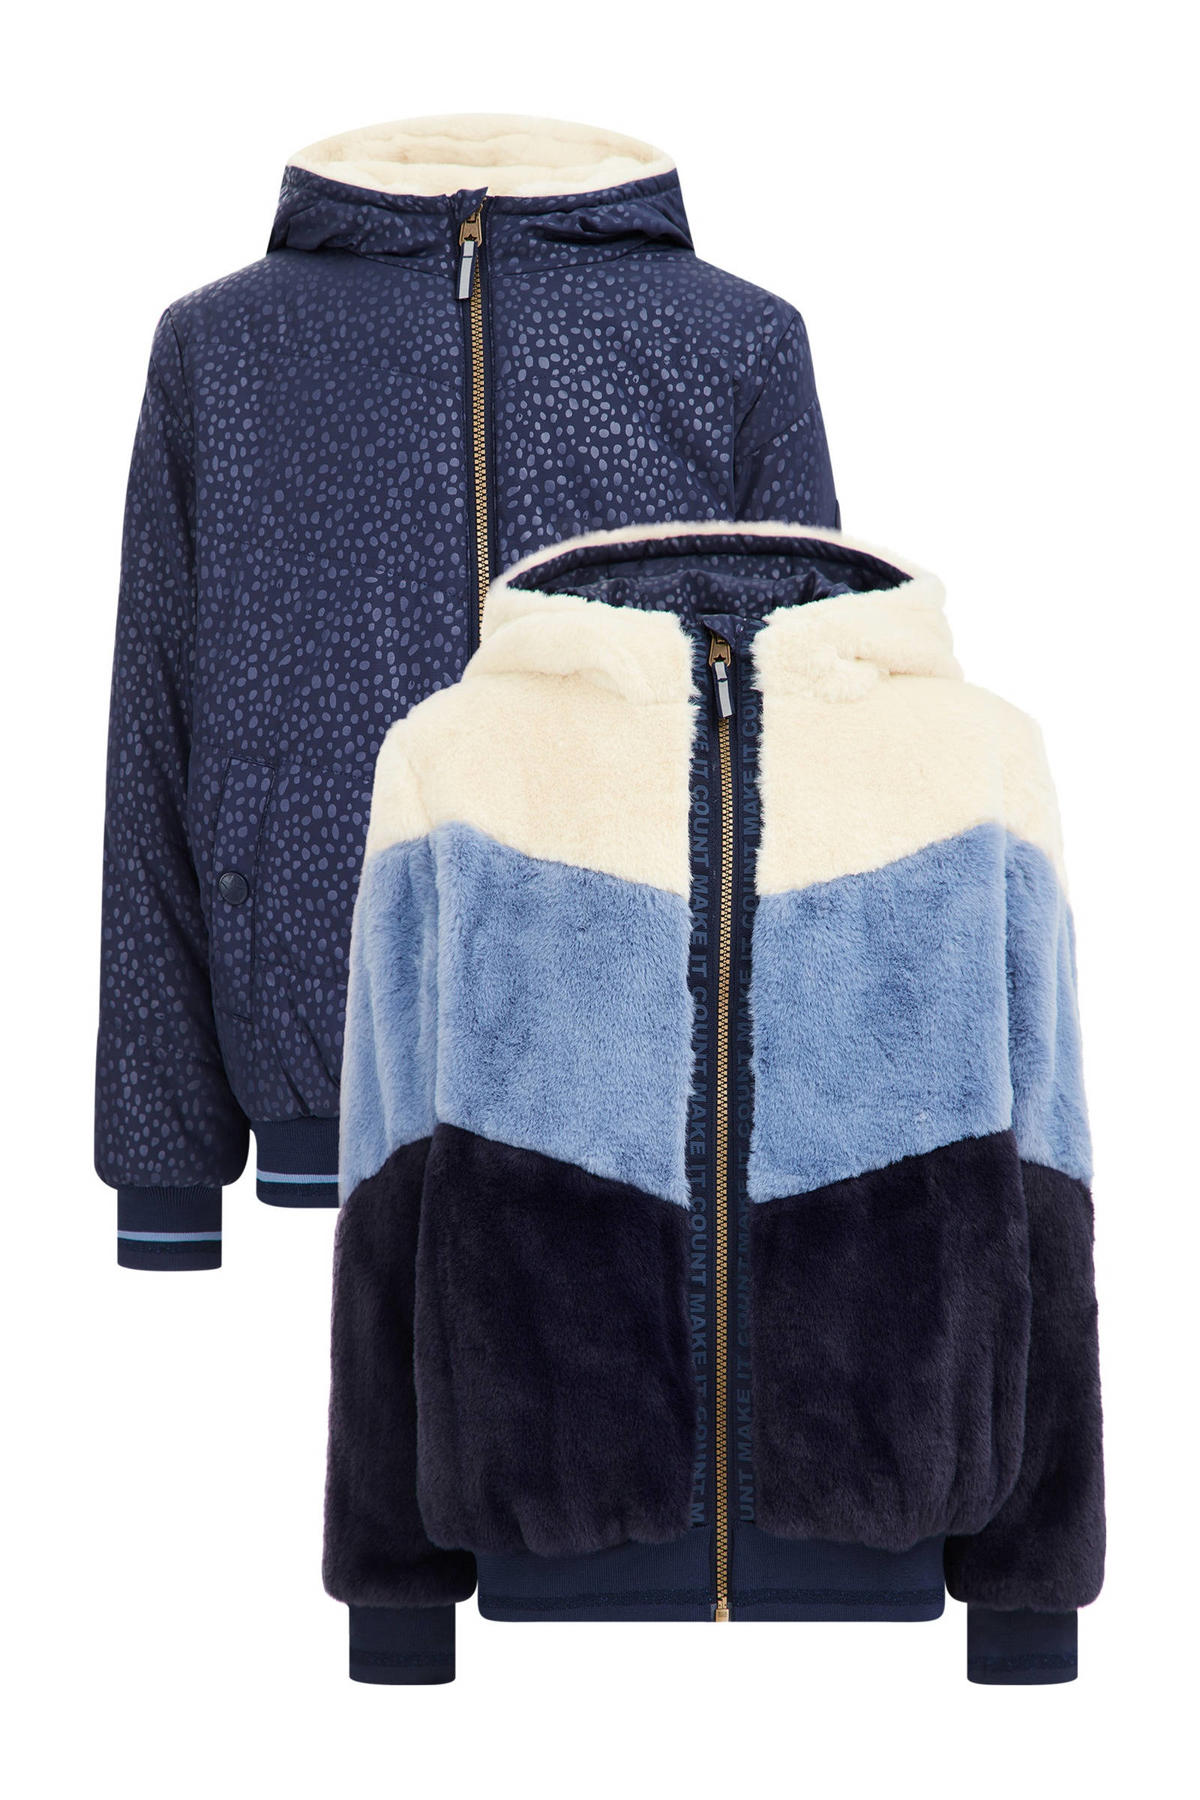 Burger Herziening Boven hoofd en schouder WE Fashion reversible winterjas met imitatiebont blauw/offwhite/donkerblauw  | wehkamp